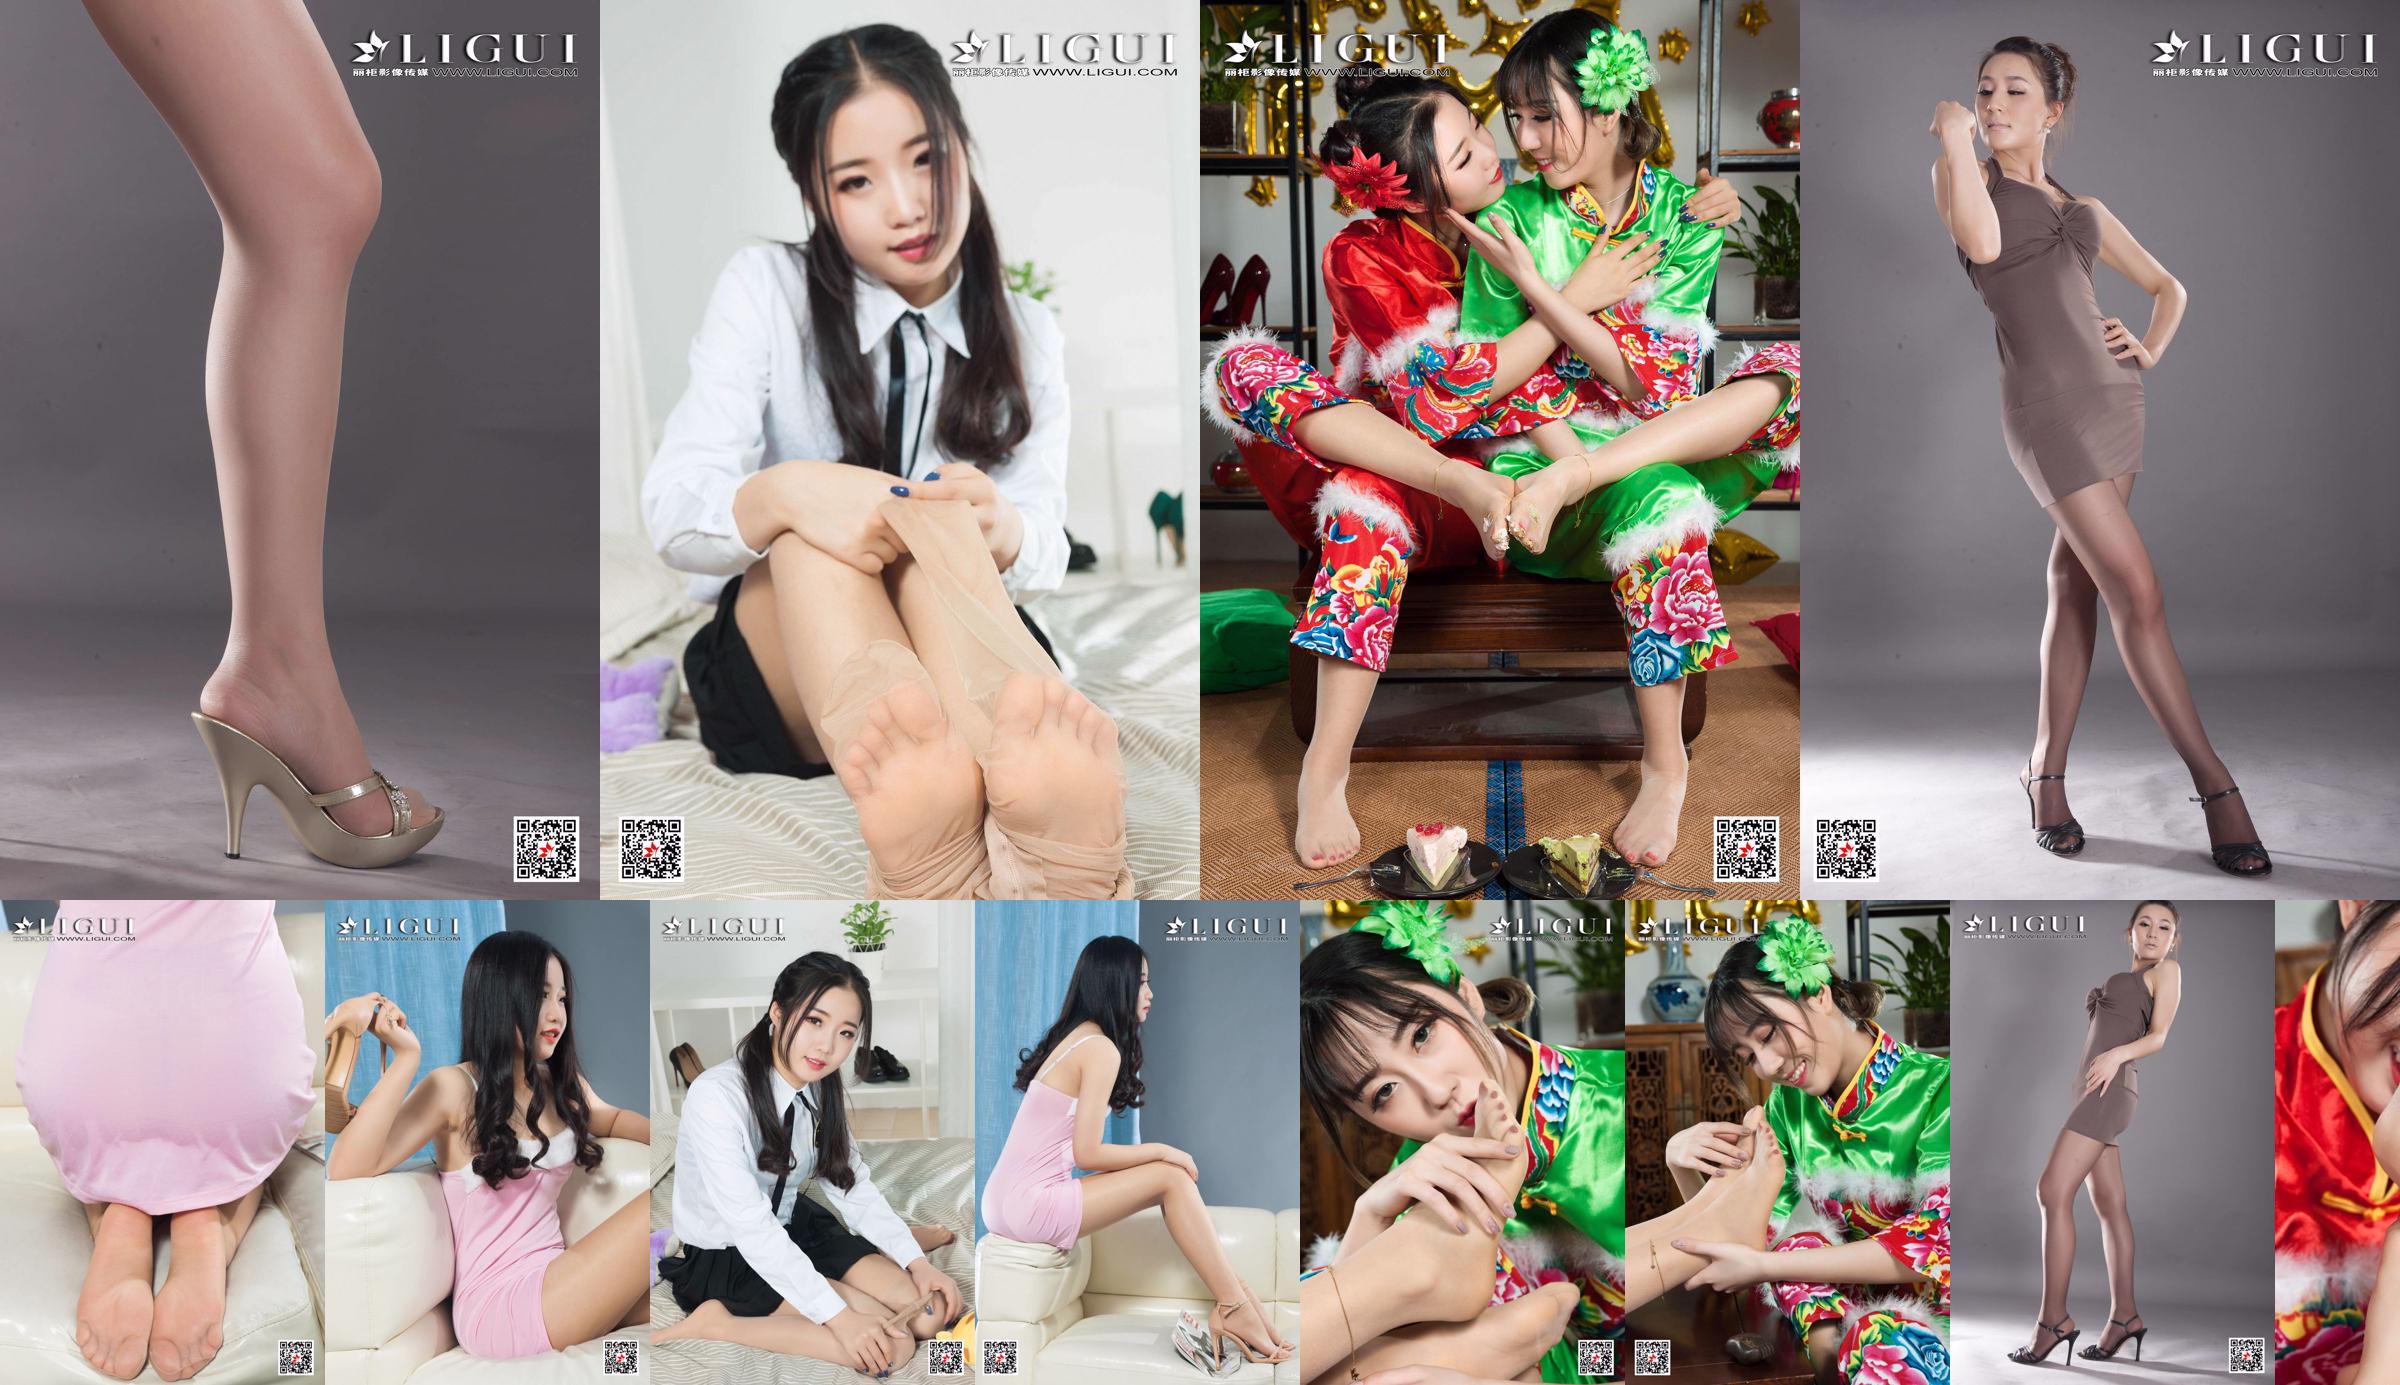 [丽 柜 Ligui] Model Yuanyuan "Studio Shot Beauty" No.36292c Halaman 3